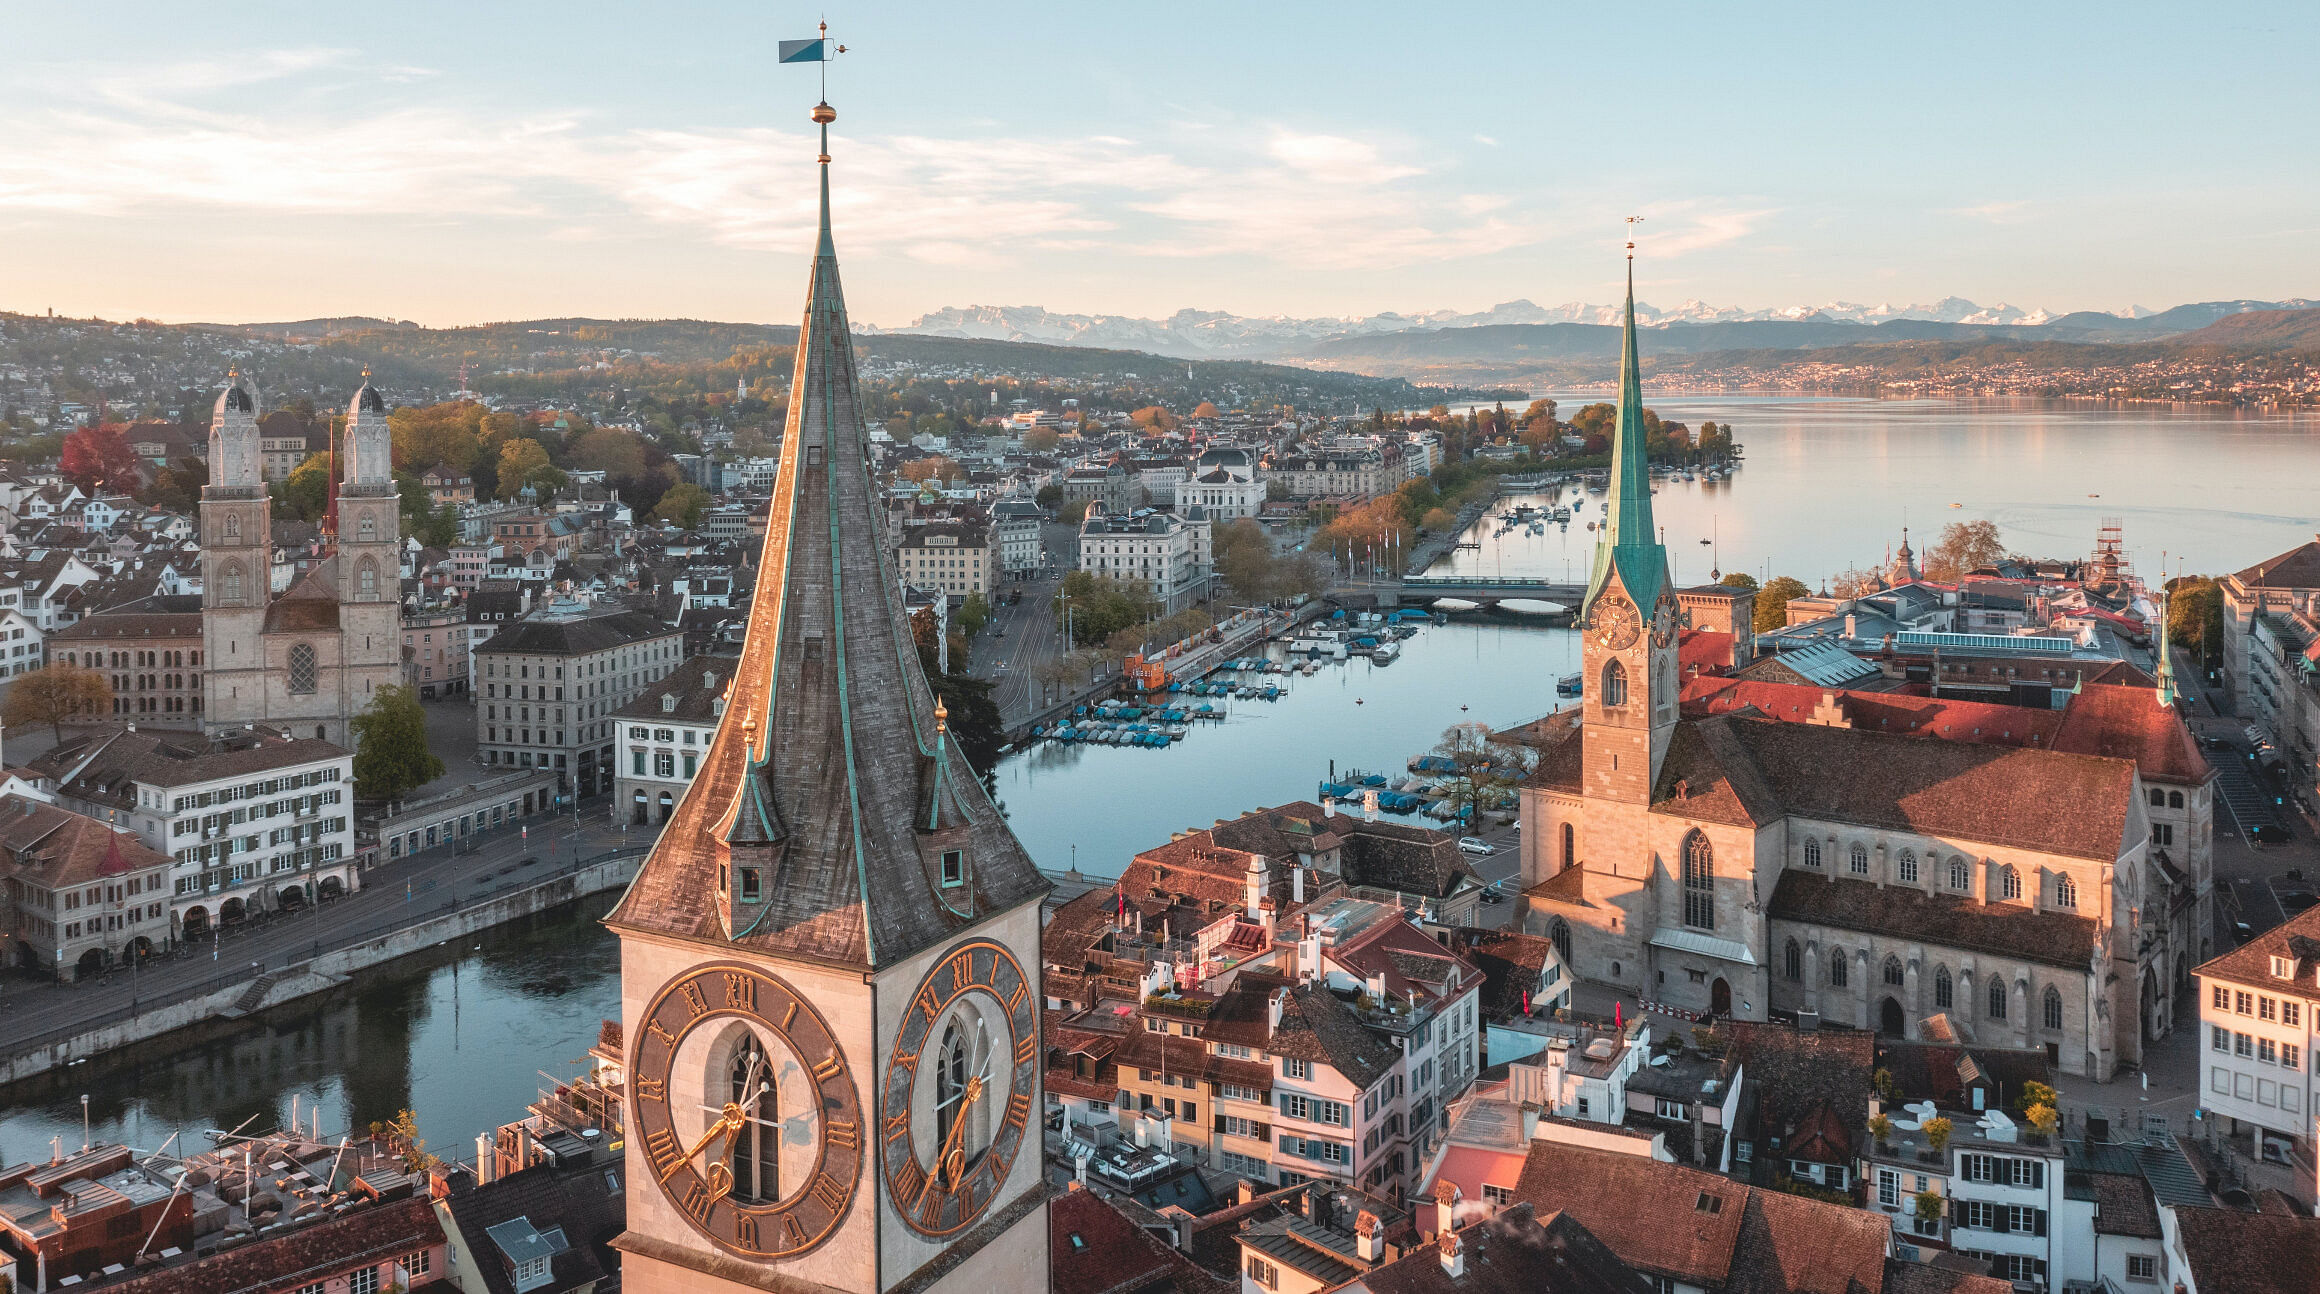 City view of Zurich, Switzerland